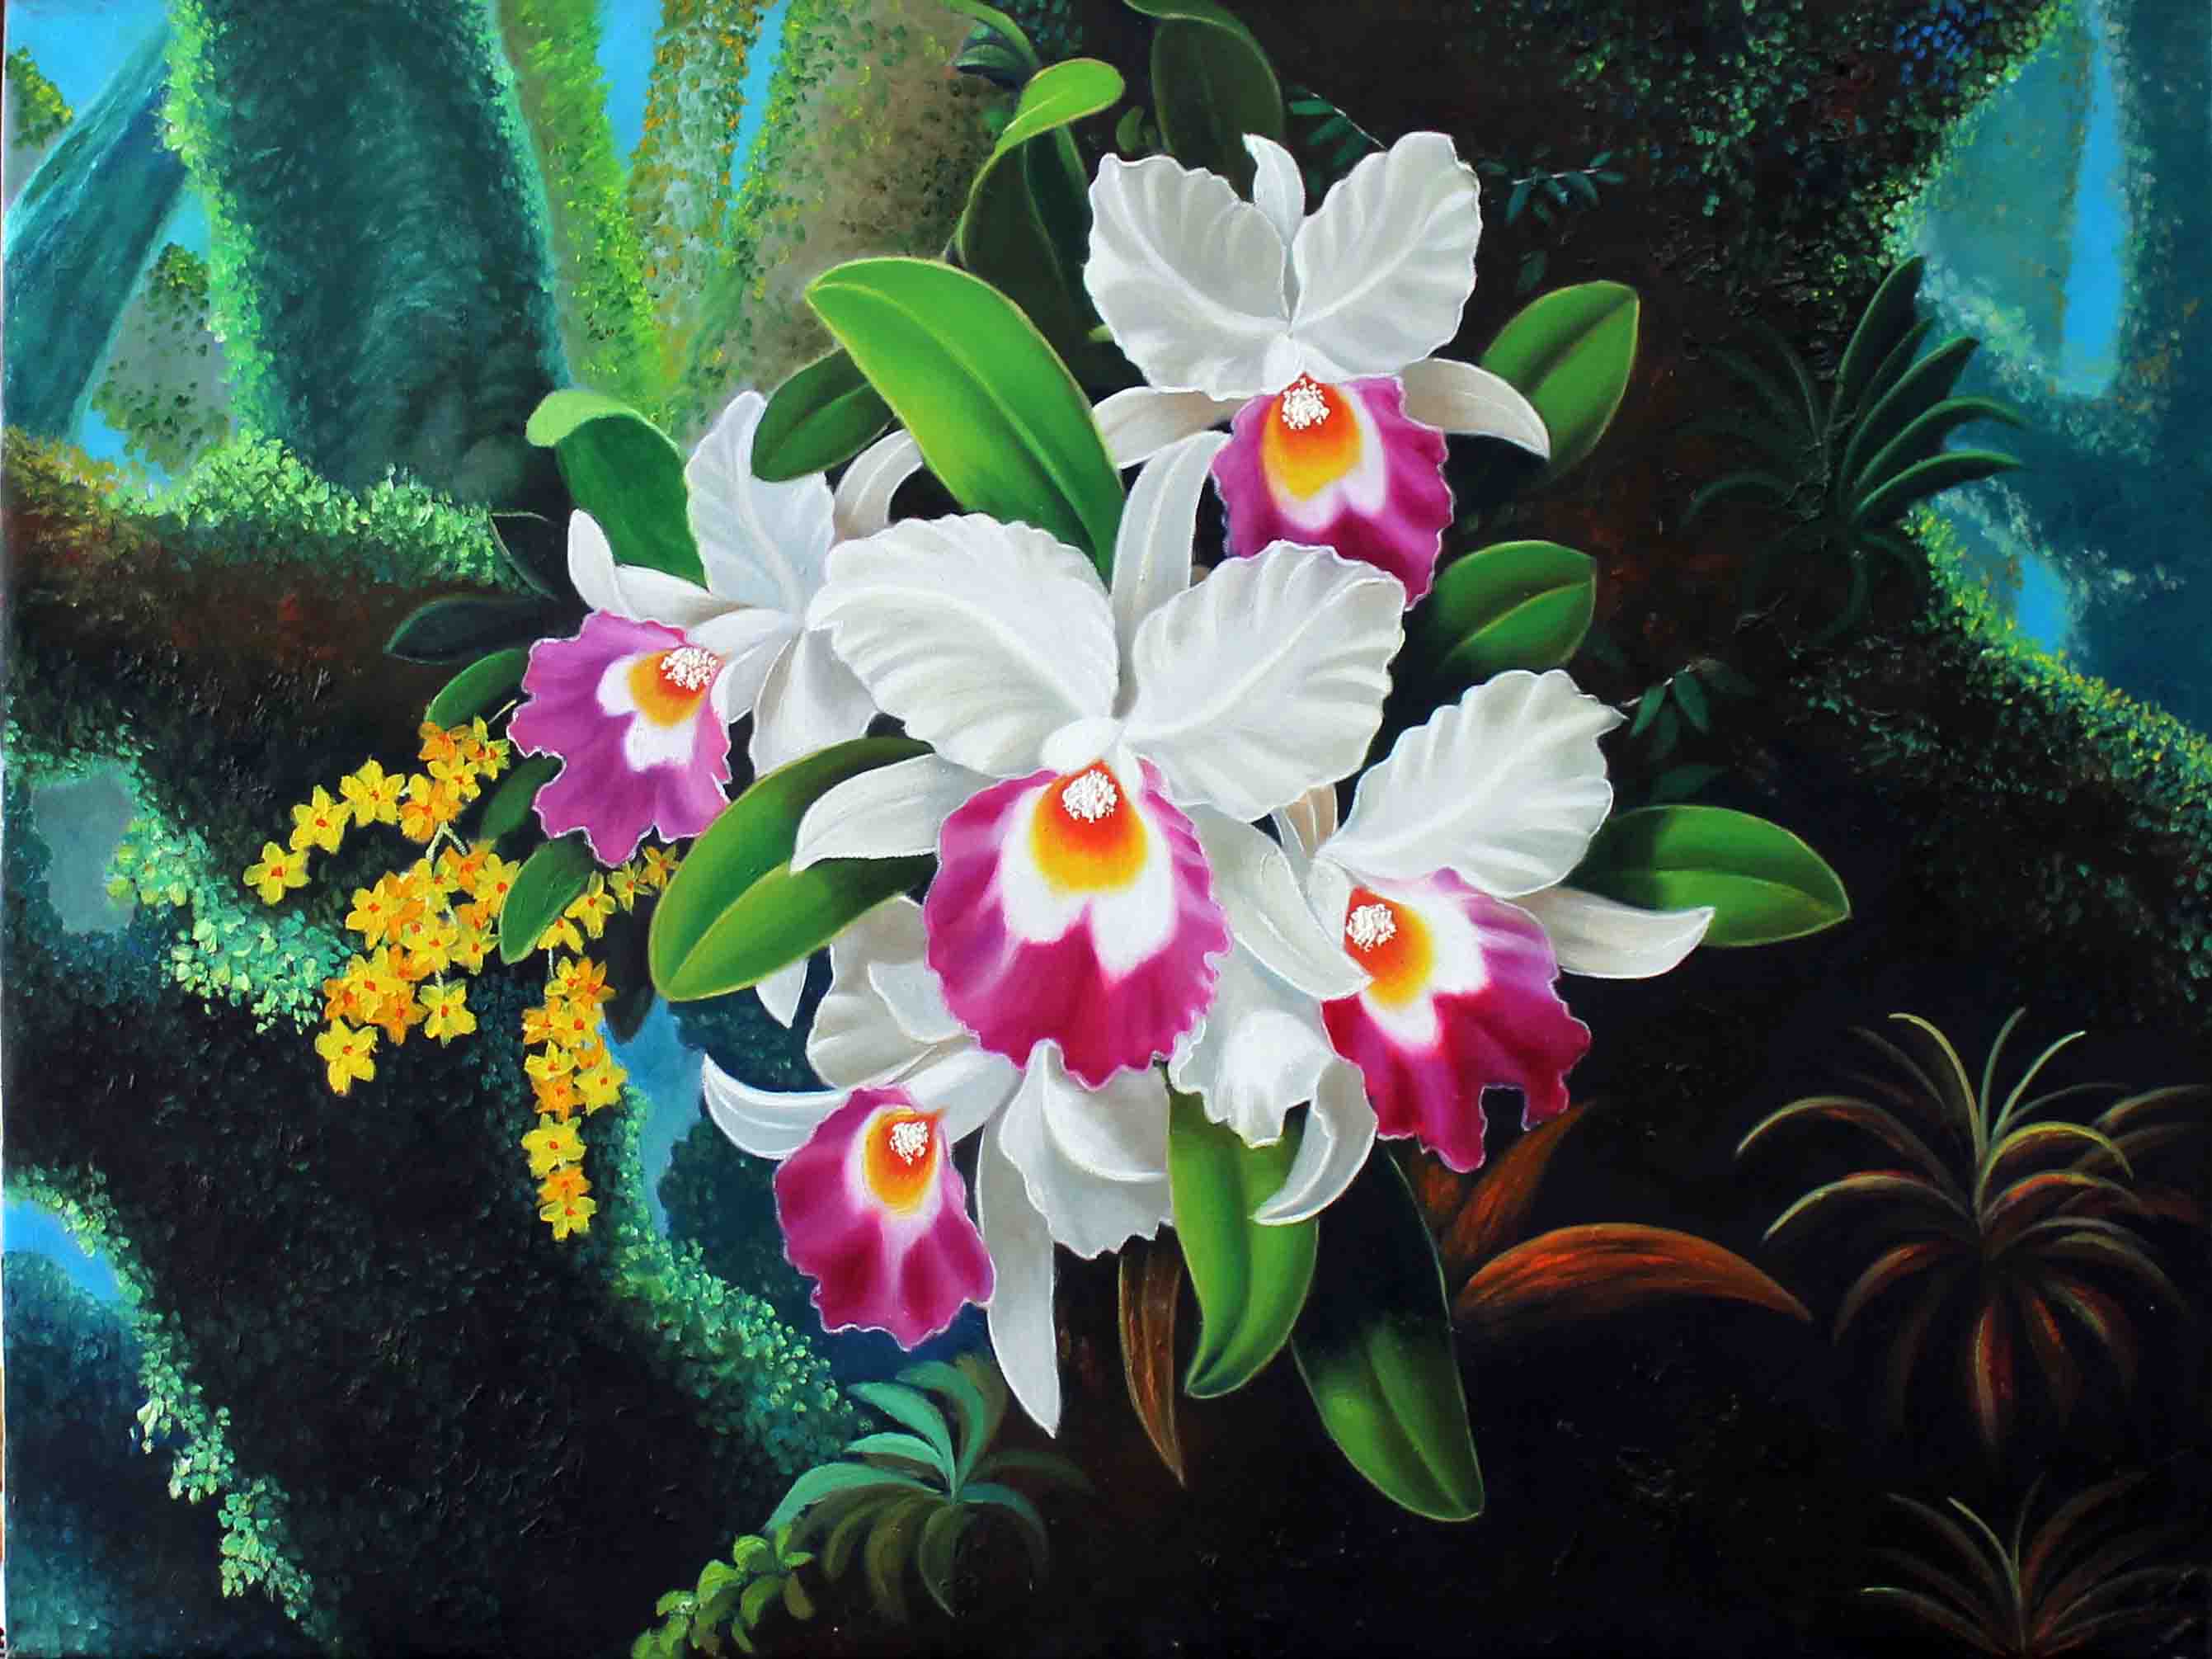 Vẻ đẹp thanh tao của tranh sơn dầu vẽ về hoa lan